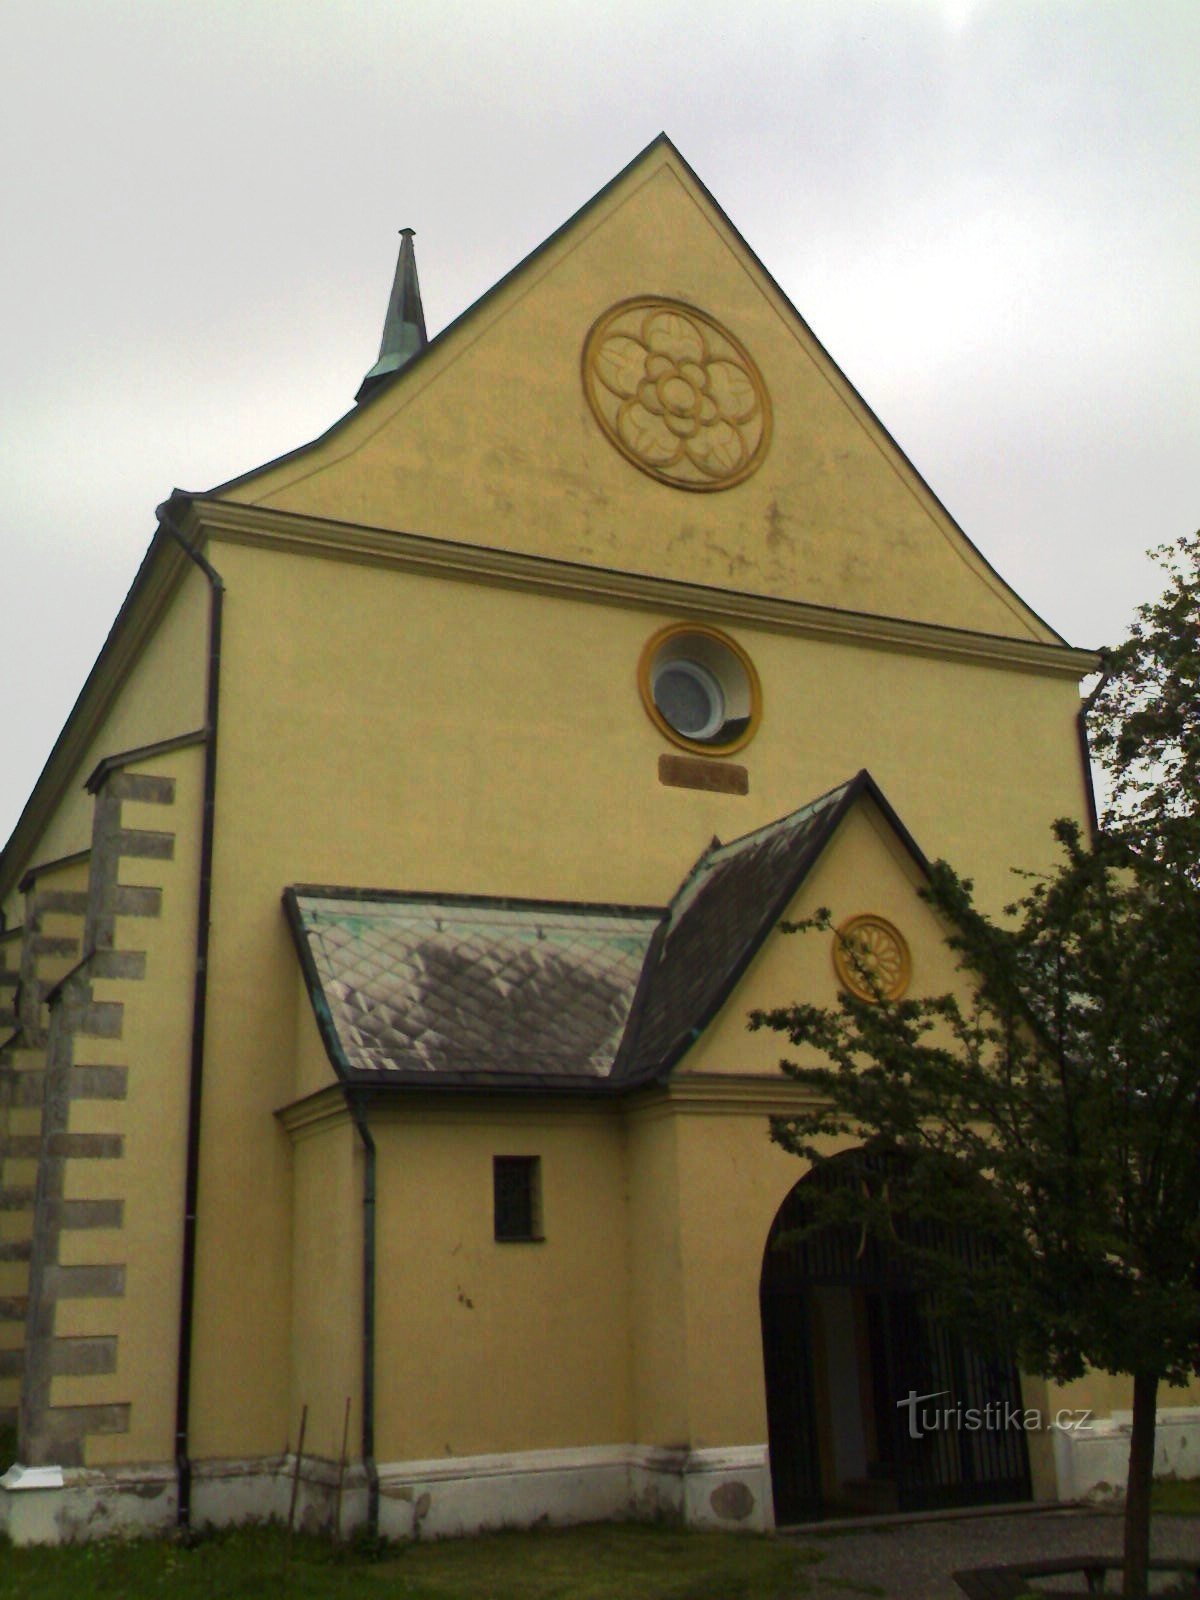 Rovensko pod Troskami - crkva sv. Vaclava